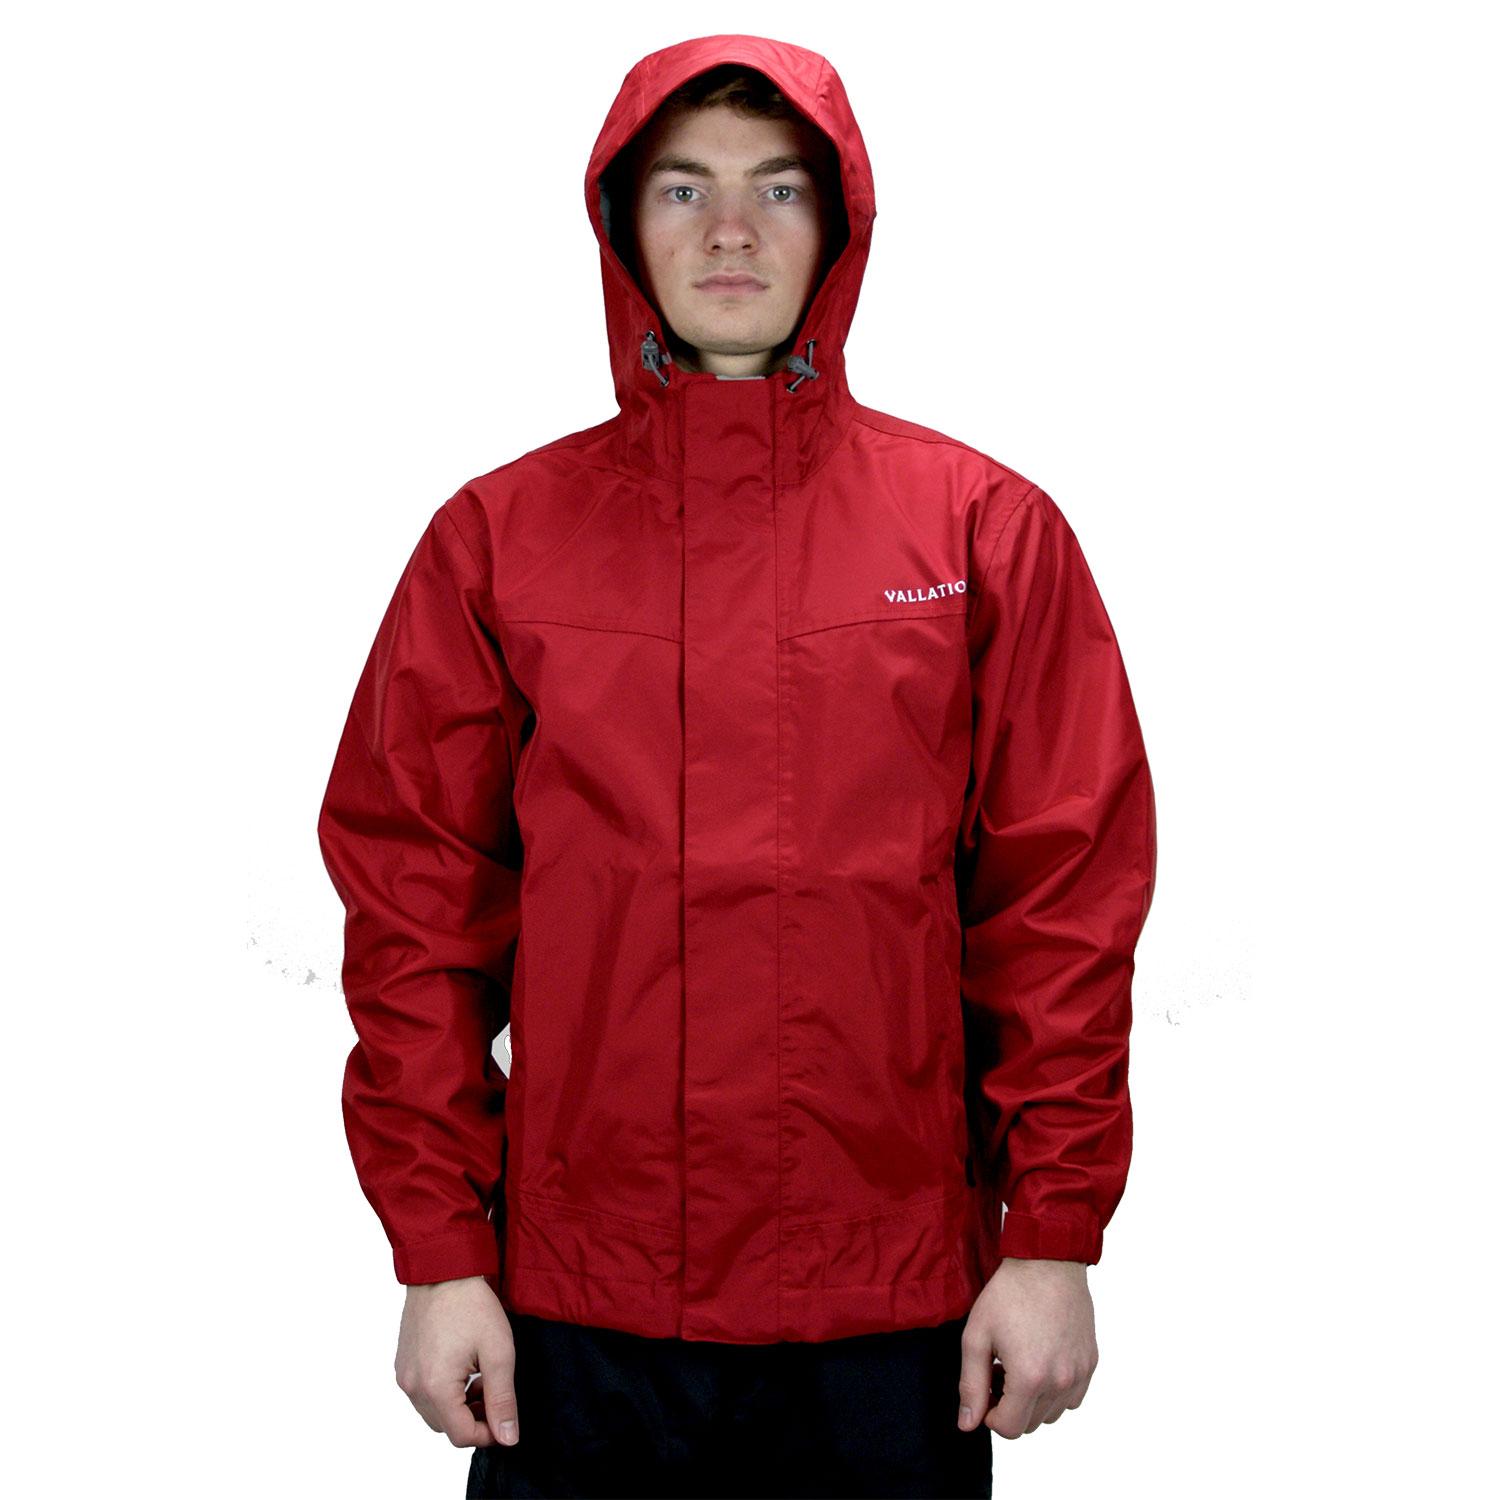 Vallation Outerwear Men's Dark Rain Jacket